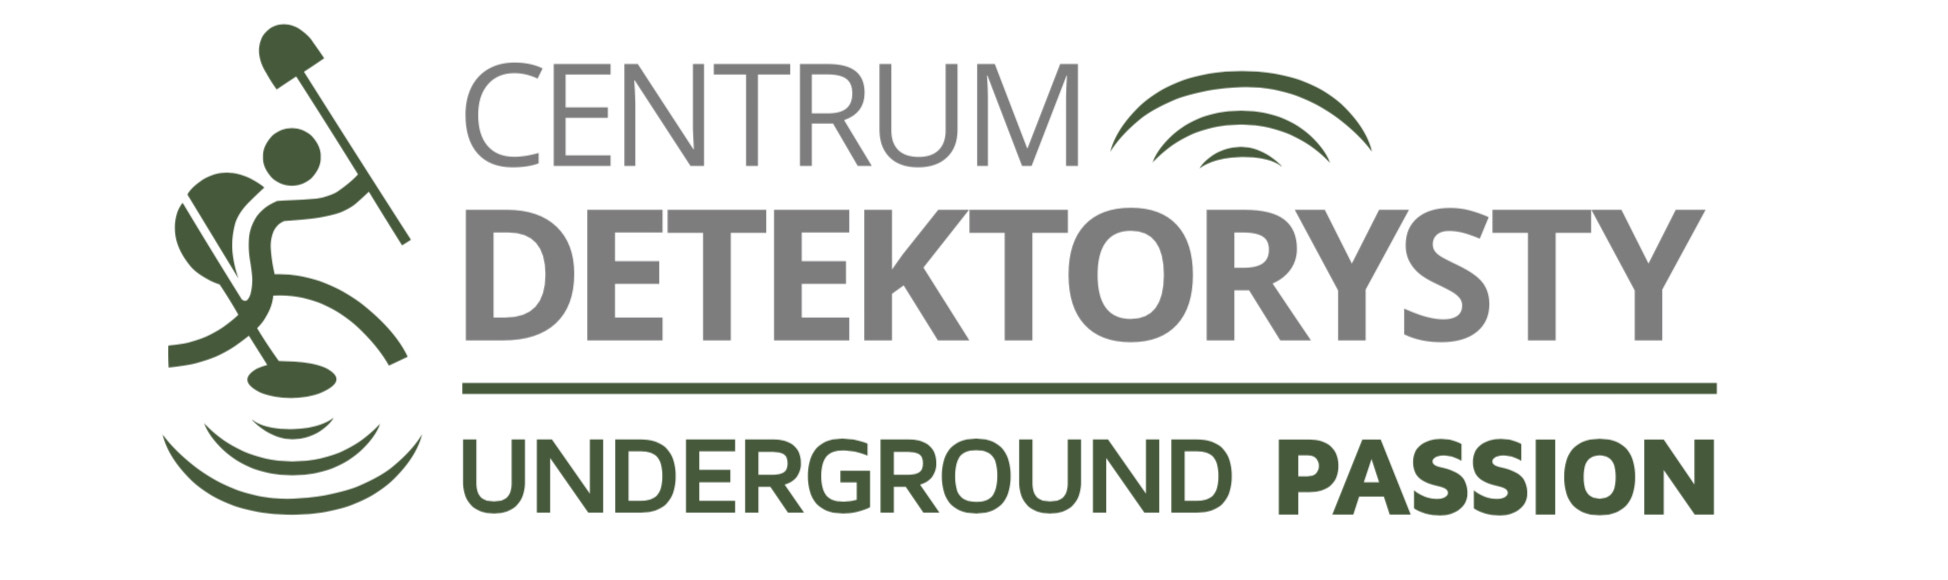 Underground Passion Logo Centrum Detektorysty Saper